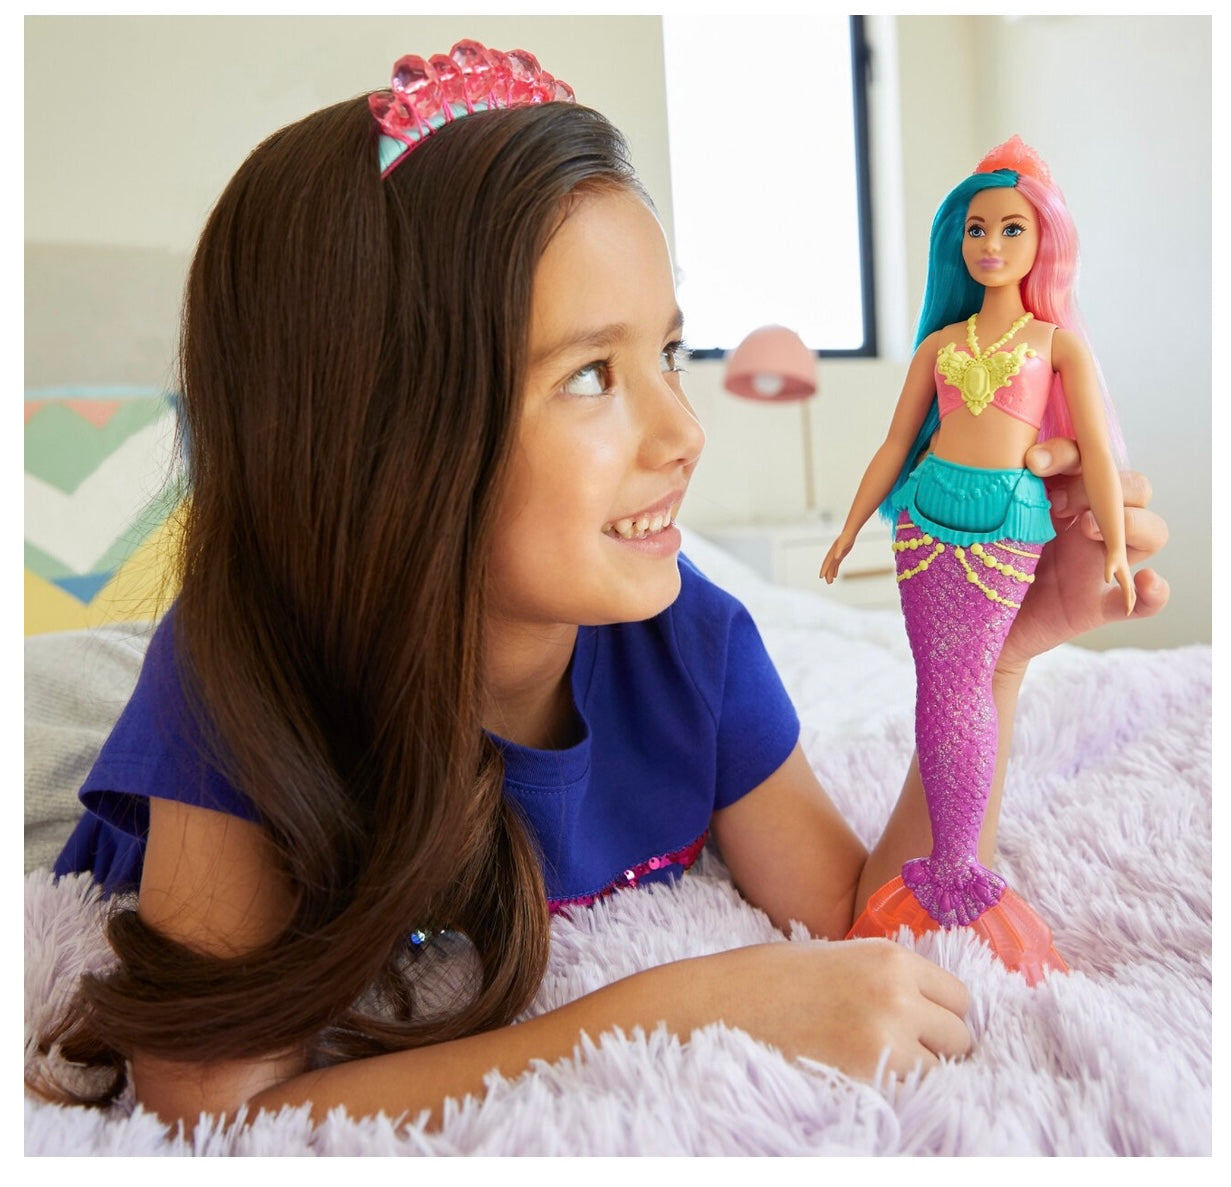 Barbie Dreamtopia Mermaid